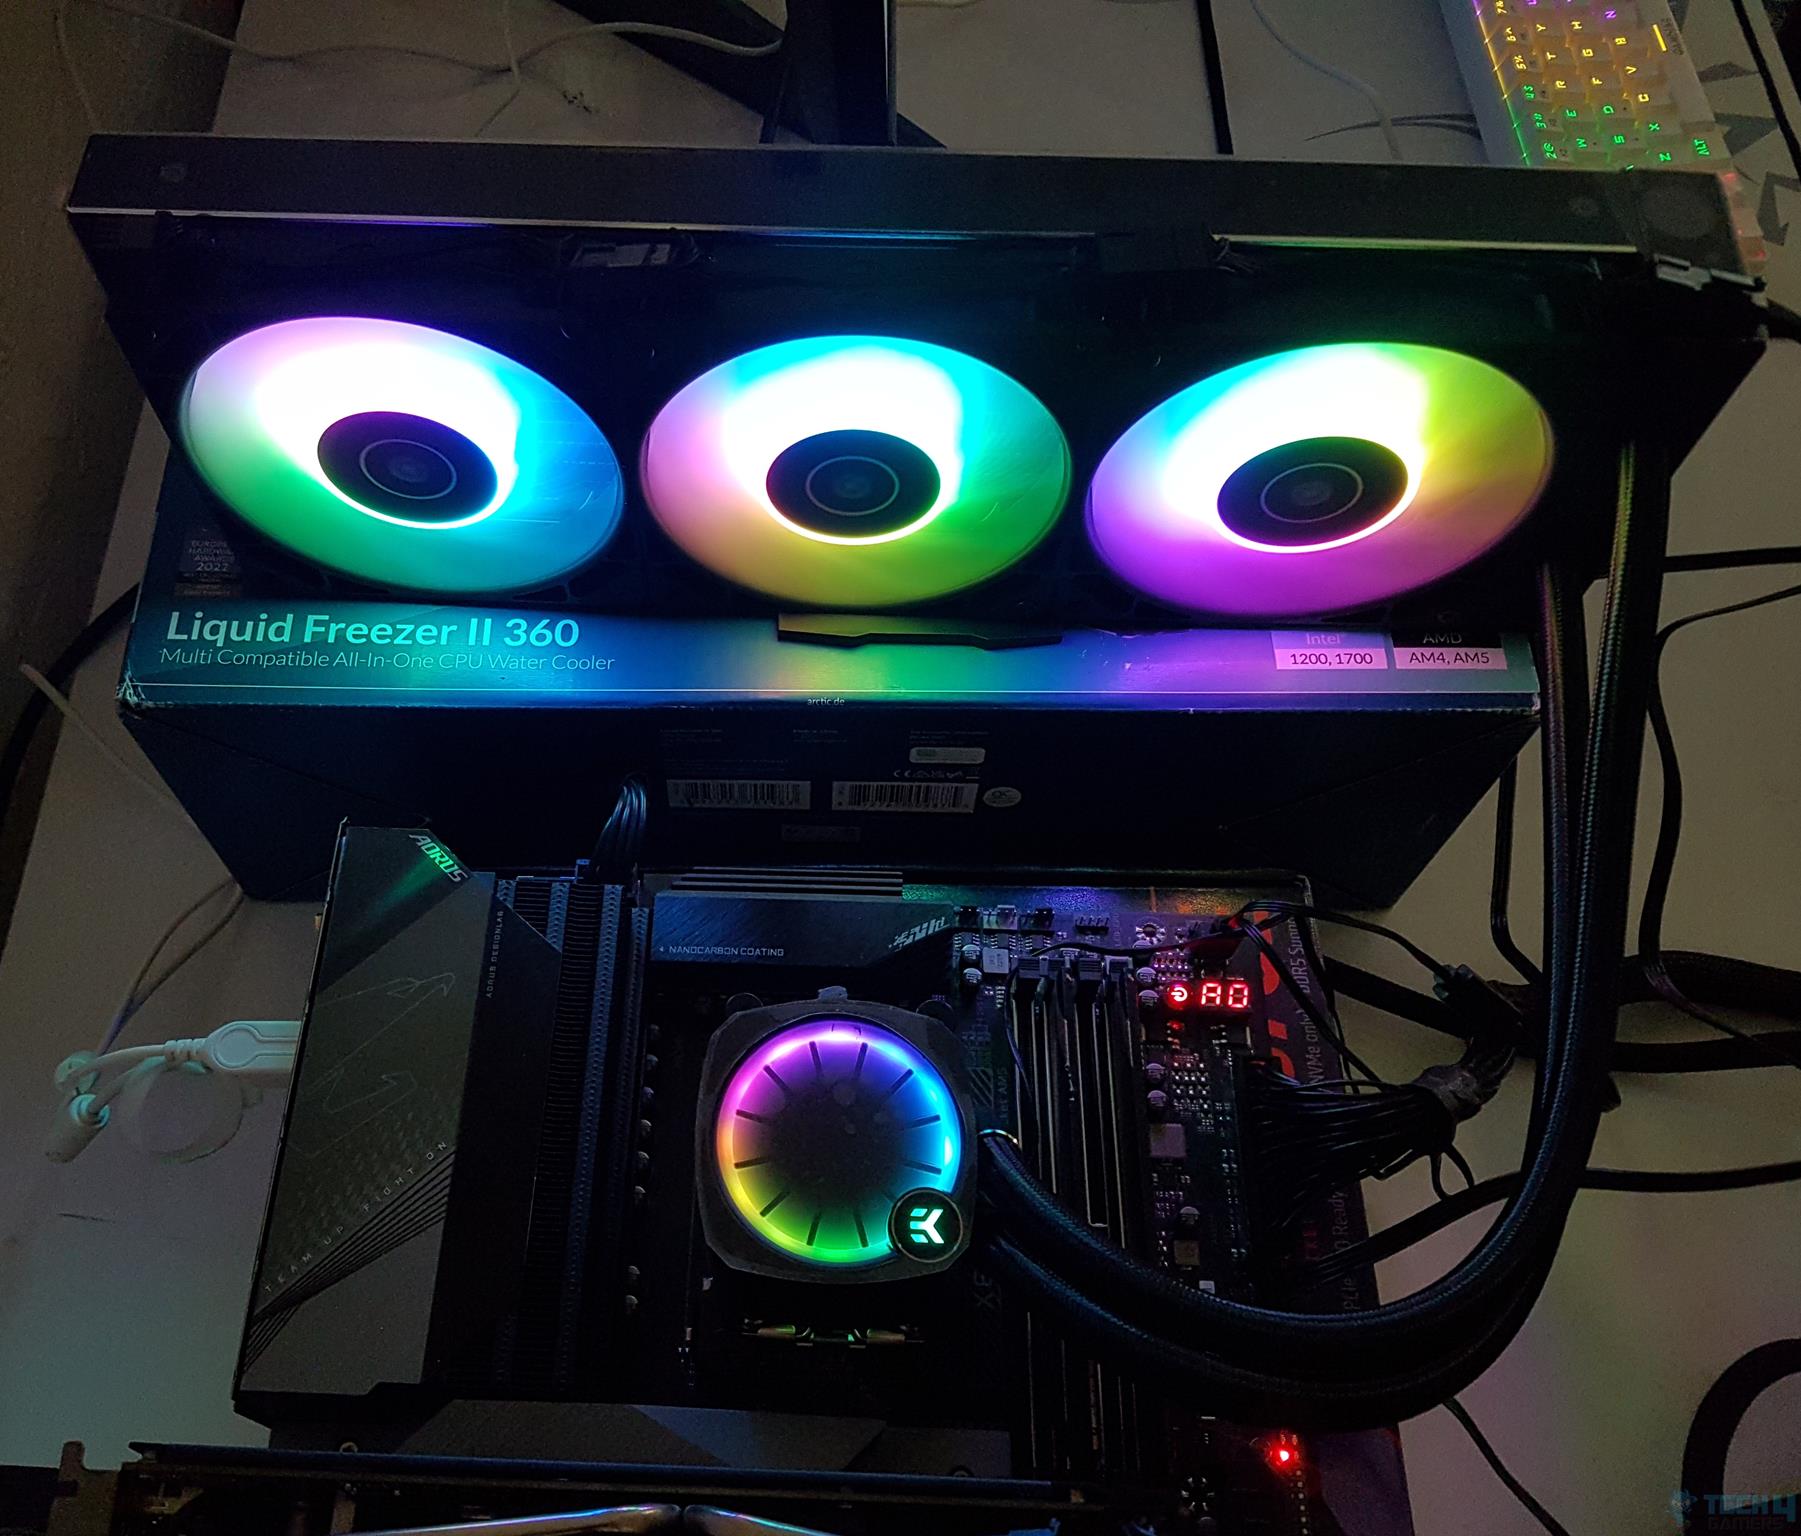 EK Nucleus AIO CR360 Lux D-RGB Cooler Review - Does It Get Better? 